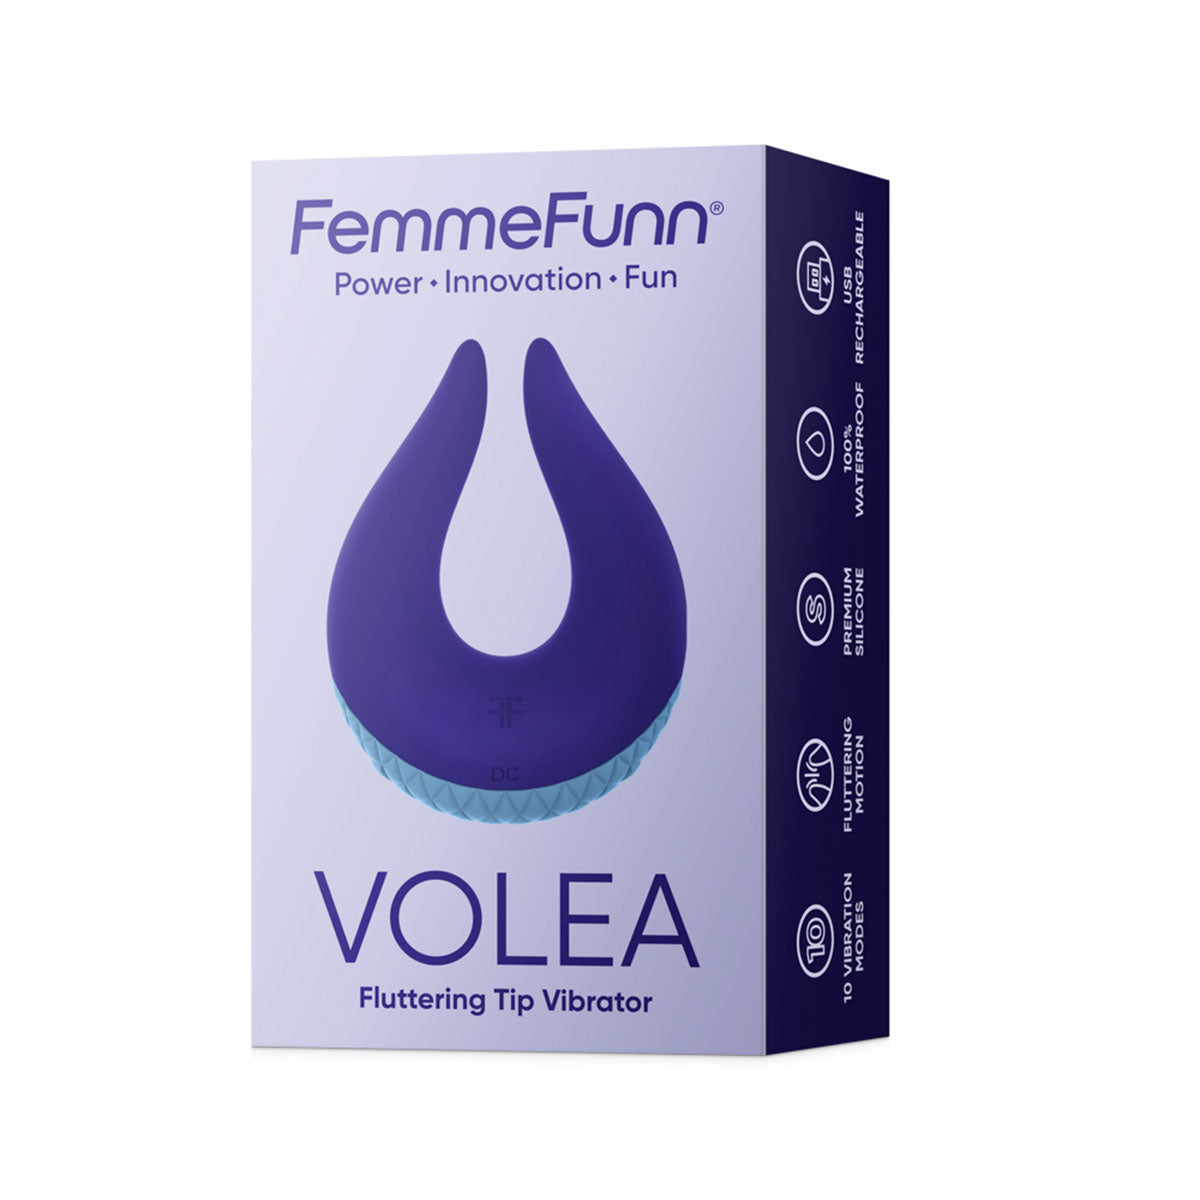 Femme Funn Volea - Purple Intimates Adult Boutique